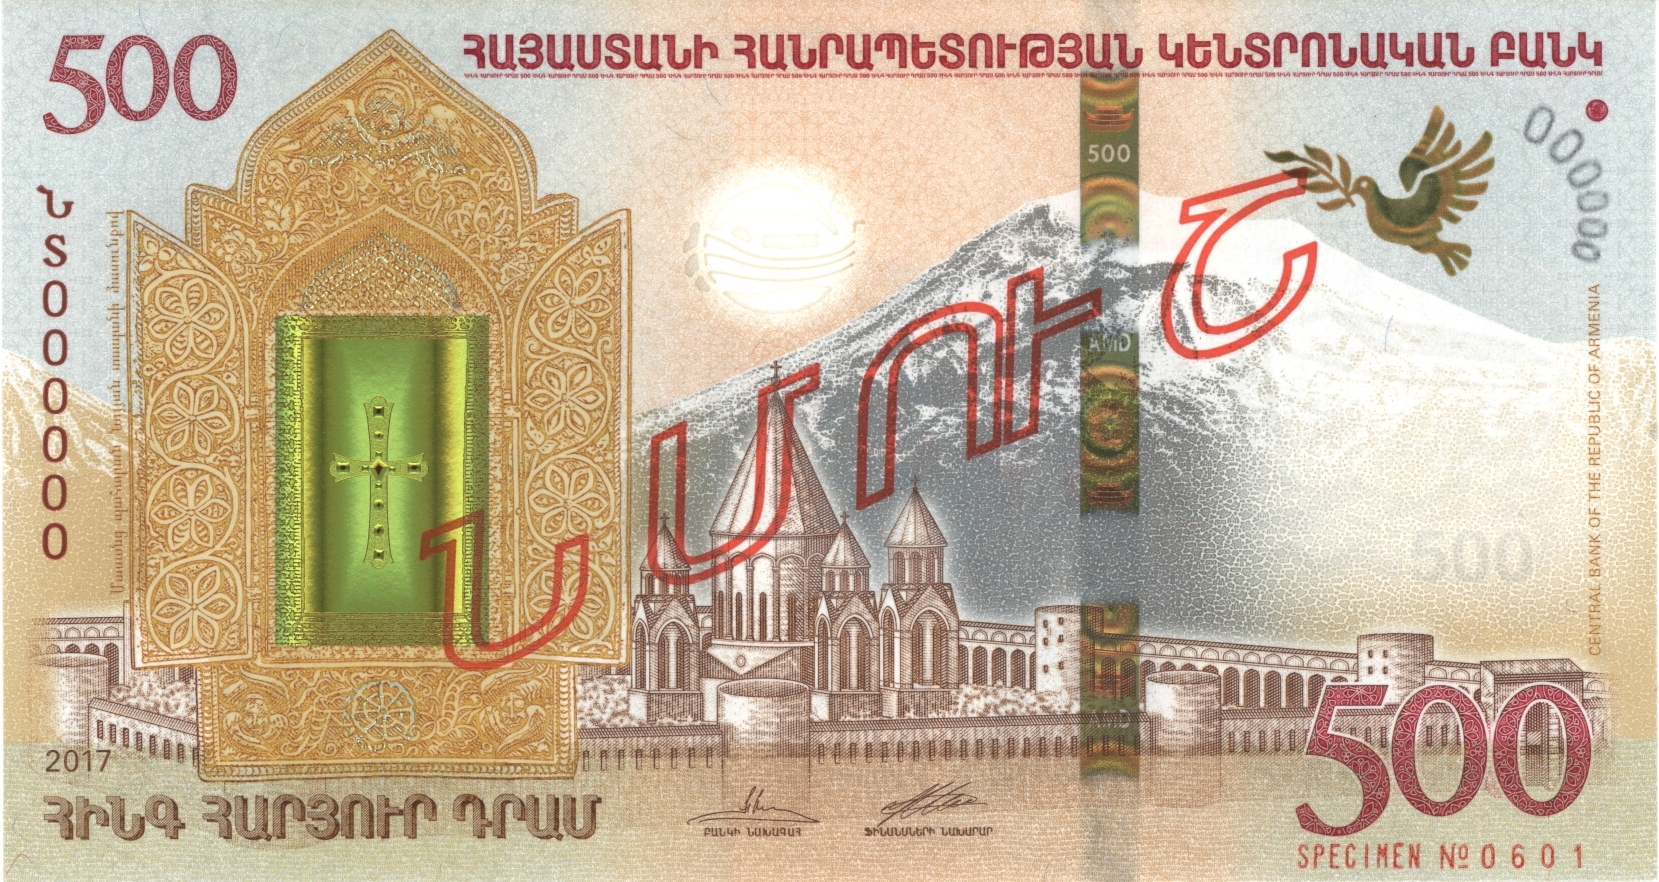 Կենտրոնական բանկ. շրջանառության մեջ են դրվել նոր 500 դրամ արժեքով «Նոյյան տապան» թղթադրամները